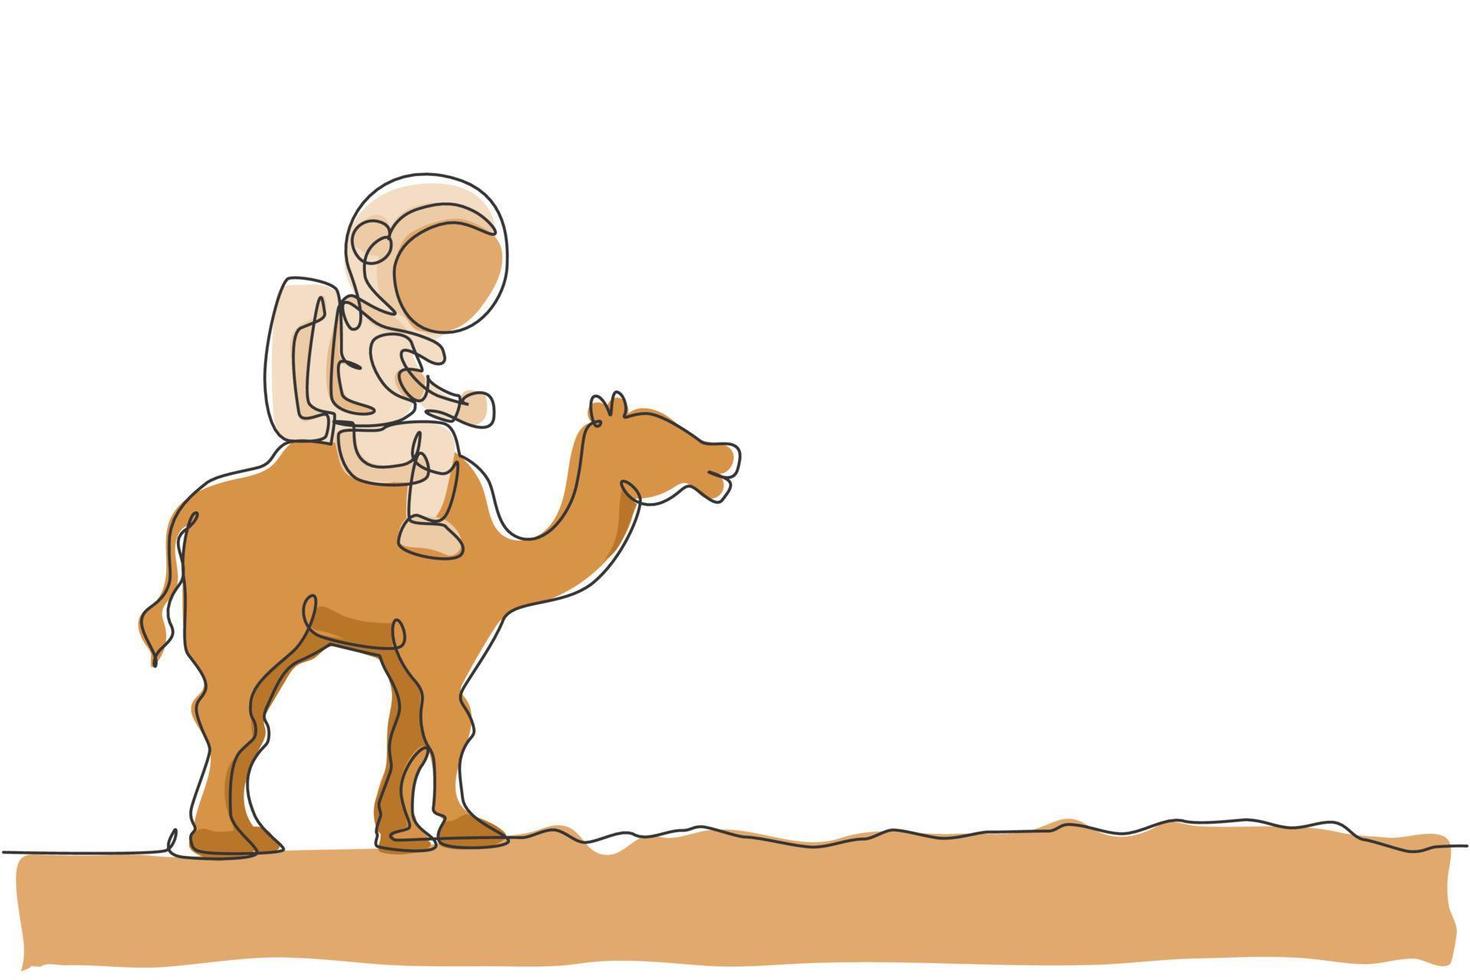 dibujo de línea continua única de cosmonauta con traje espacial montando camello del desierto, animal de granja en la superficie de la luna. concepto de viaje de safari de astronauta de fantasía. Ilustración de vector de diseño de dibujo de una línea de moda